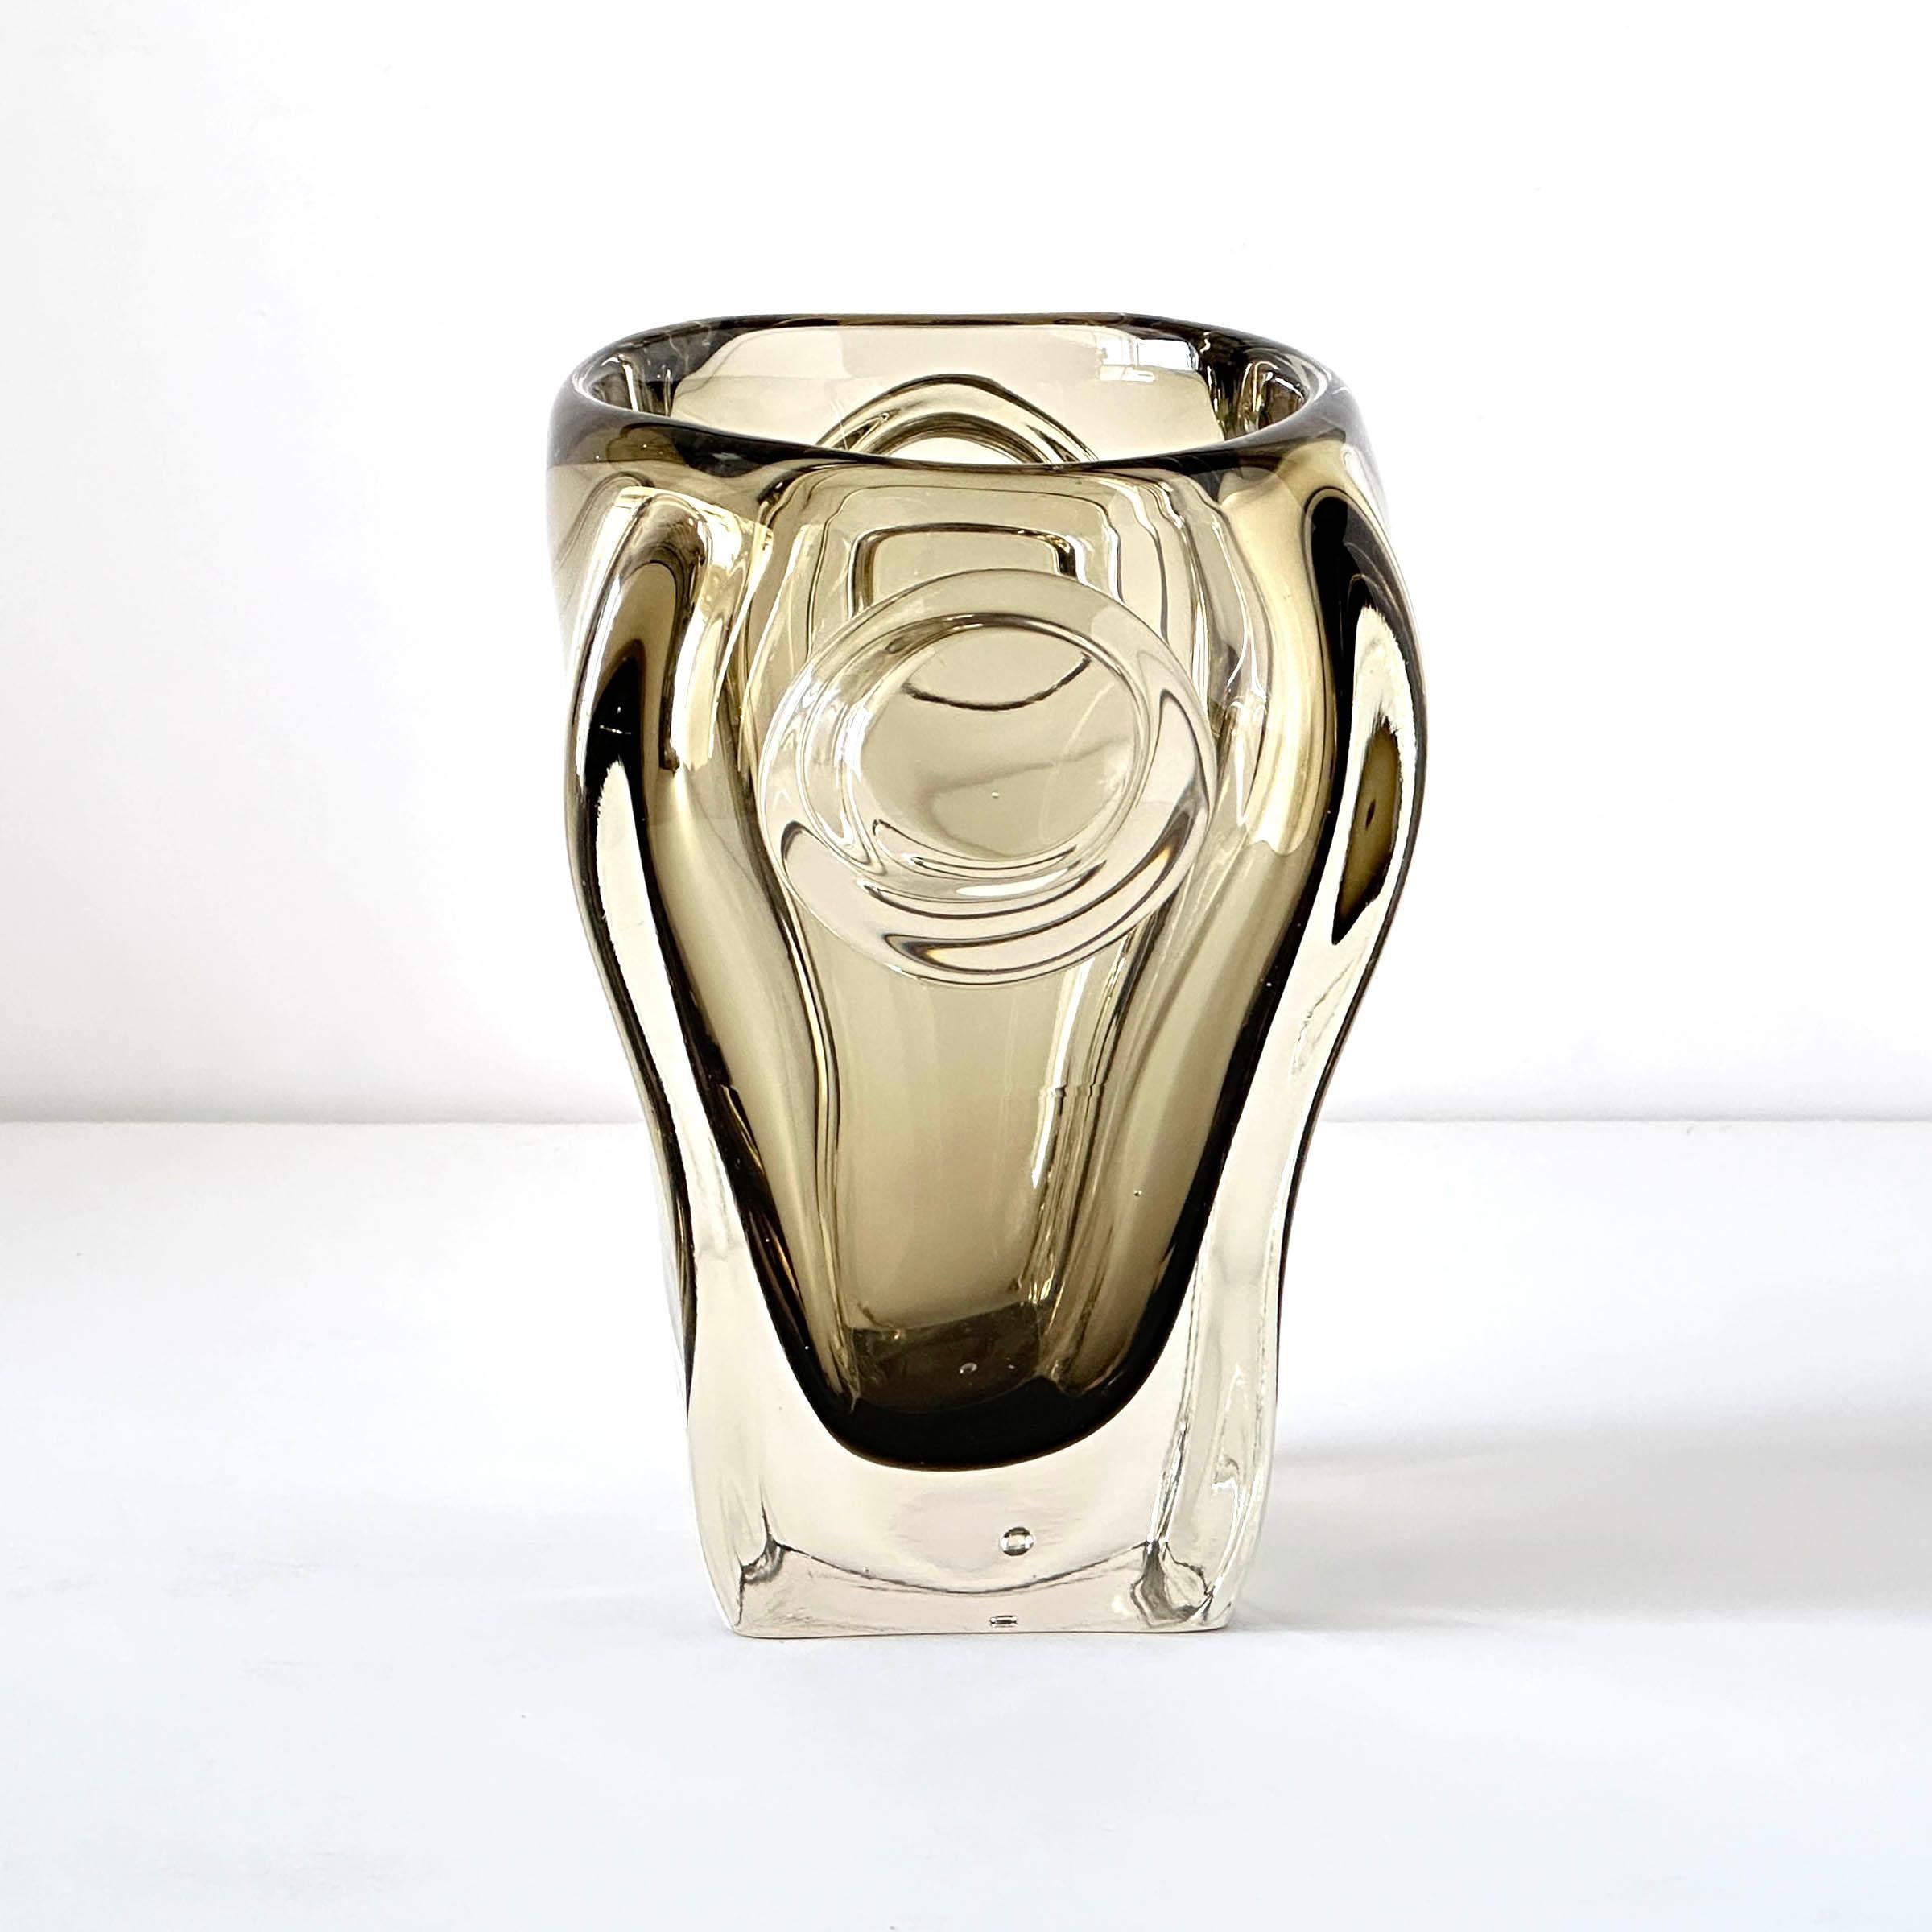 Fantastique seau à glace en verre d'art lourd dans le style de SkLO Union Rosice ou Sklarna Chřibská Glassworks. Le verre d'art tchèque à son meilleur, et fonctionnel de surcroît. Forme organique douce et asymétrique avec des poignées de chaque